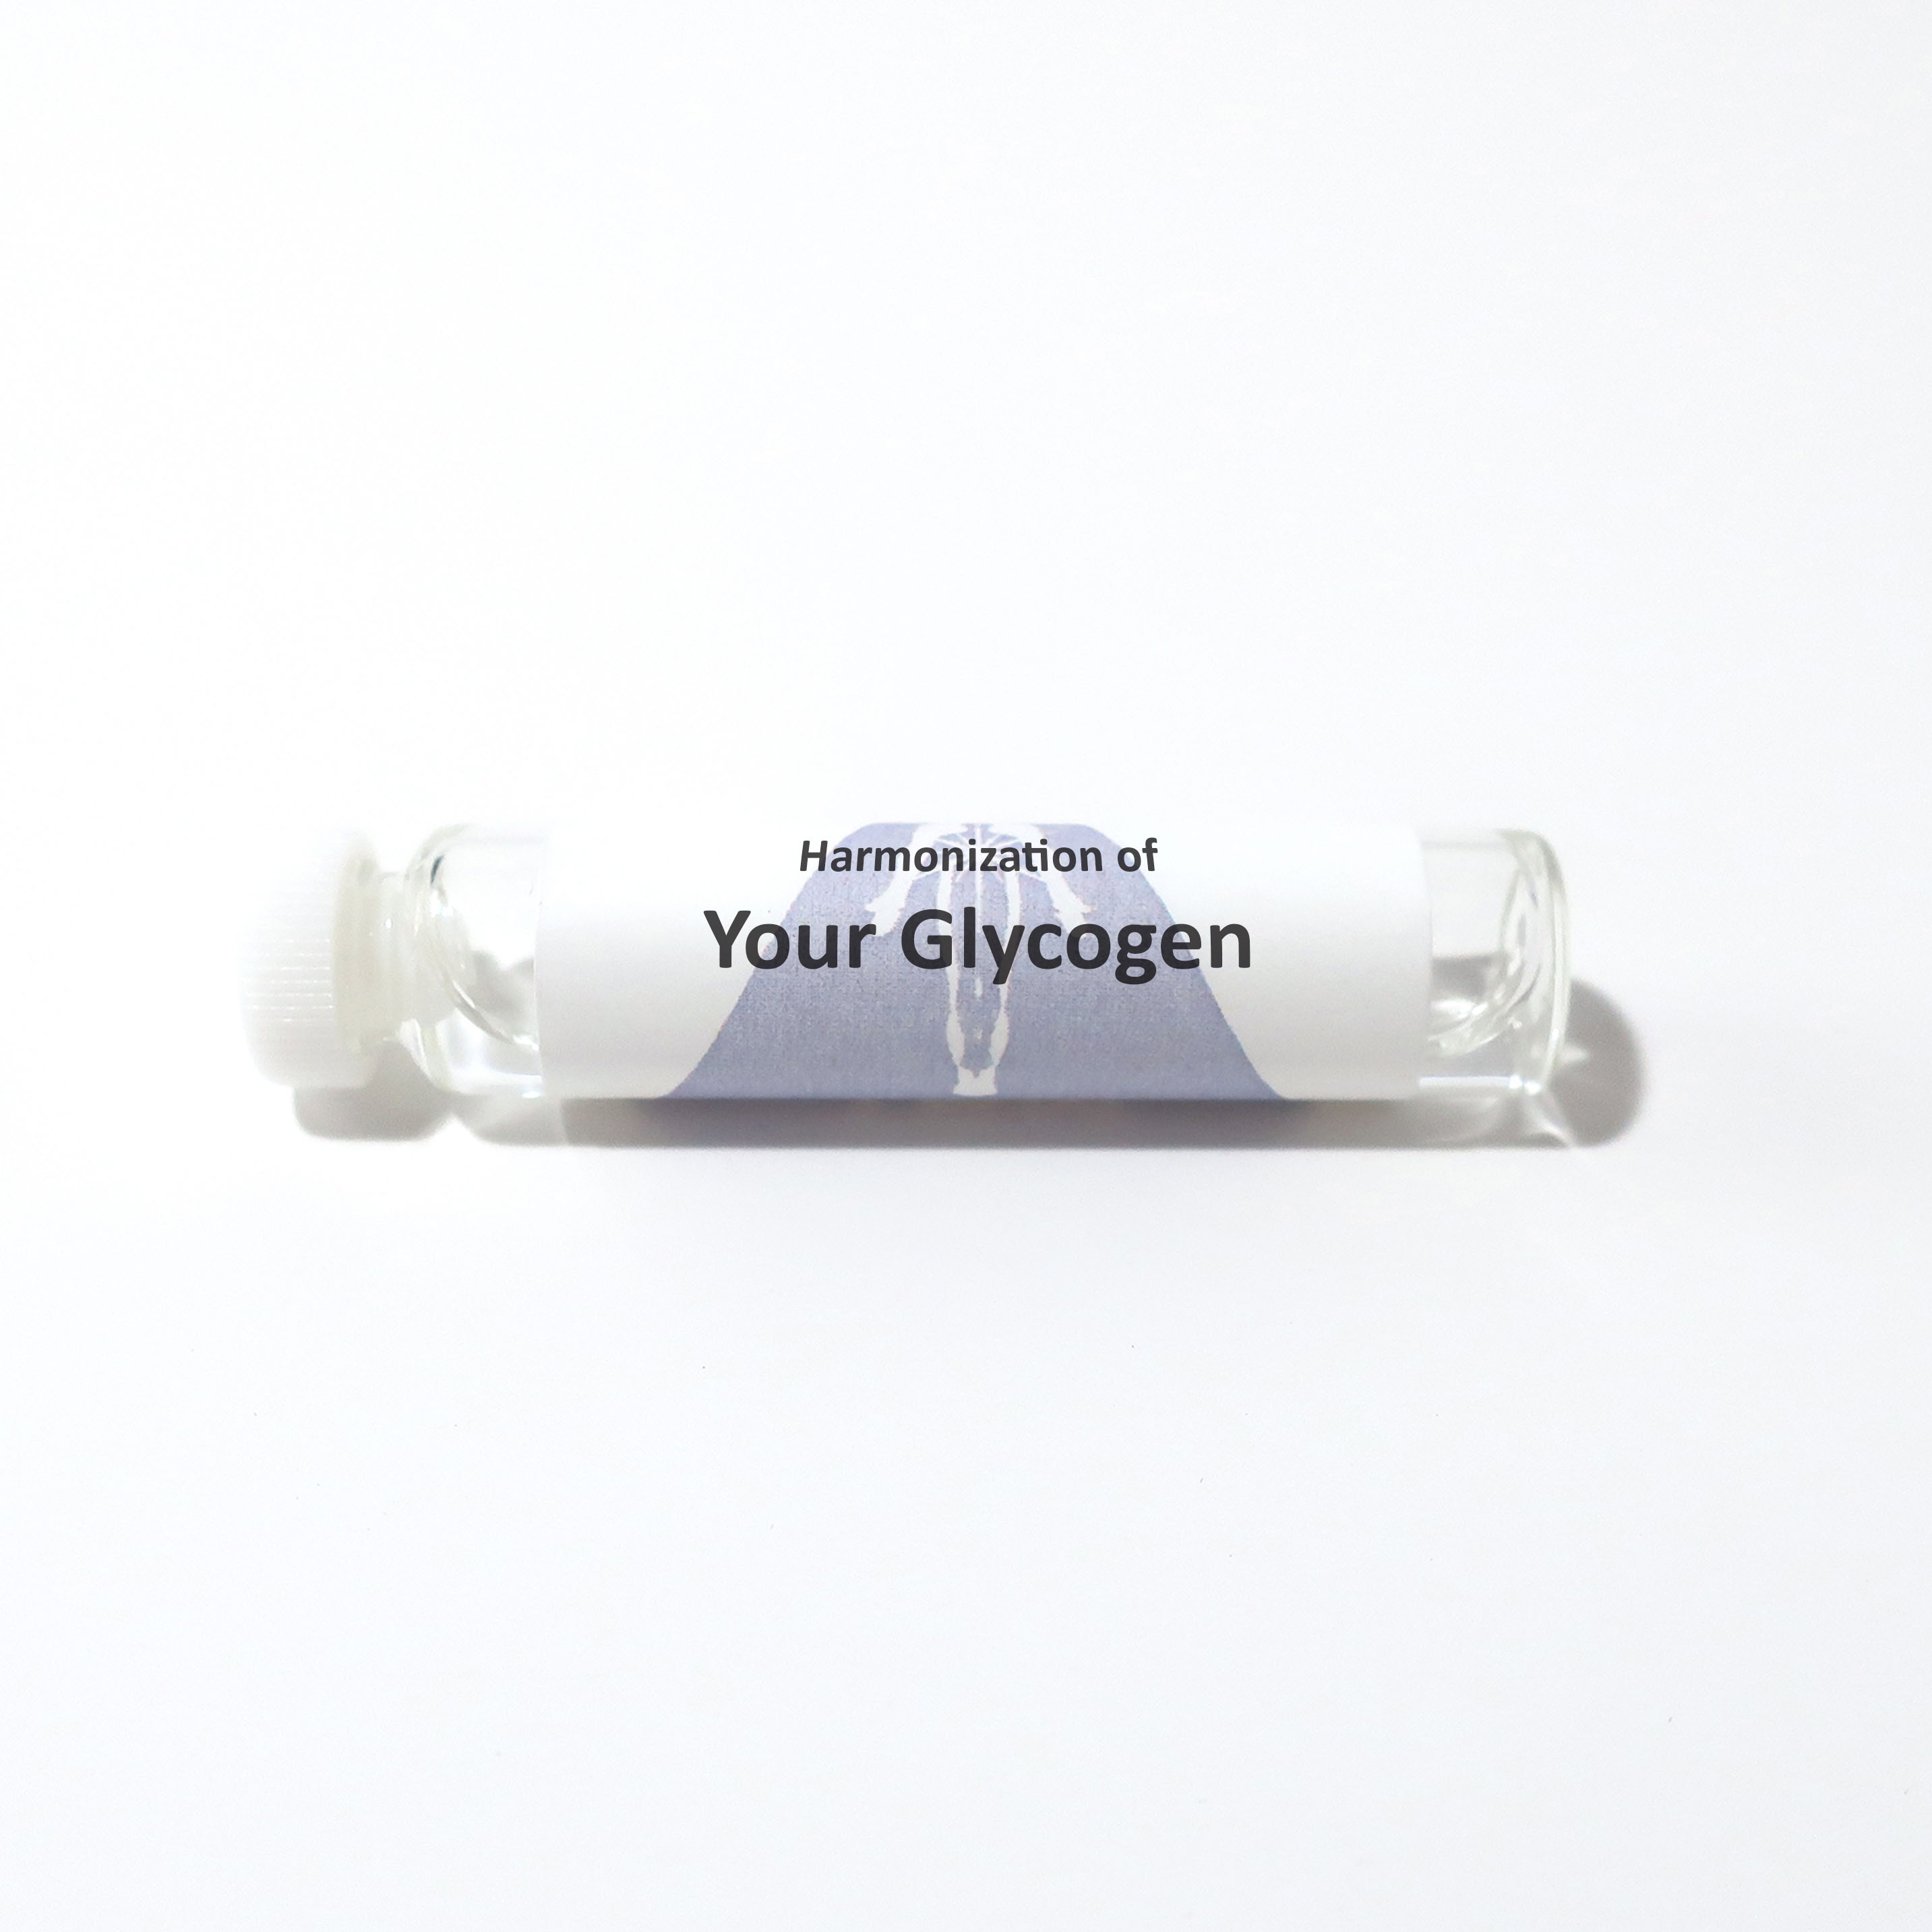 Your Glycogen